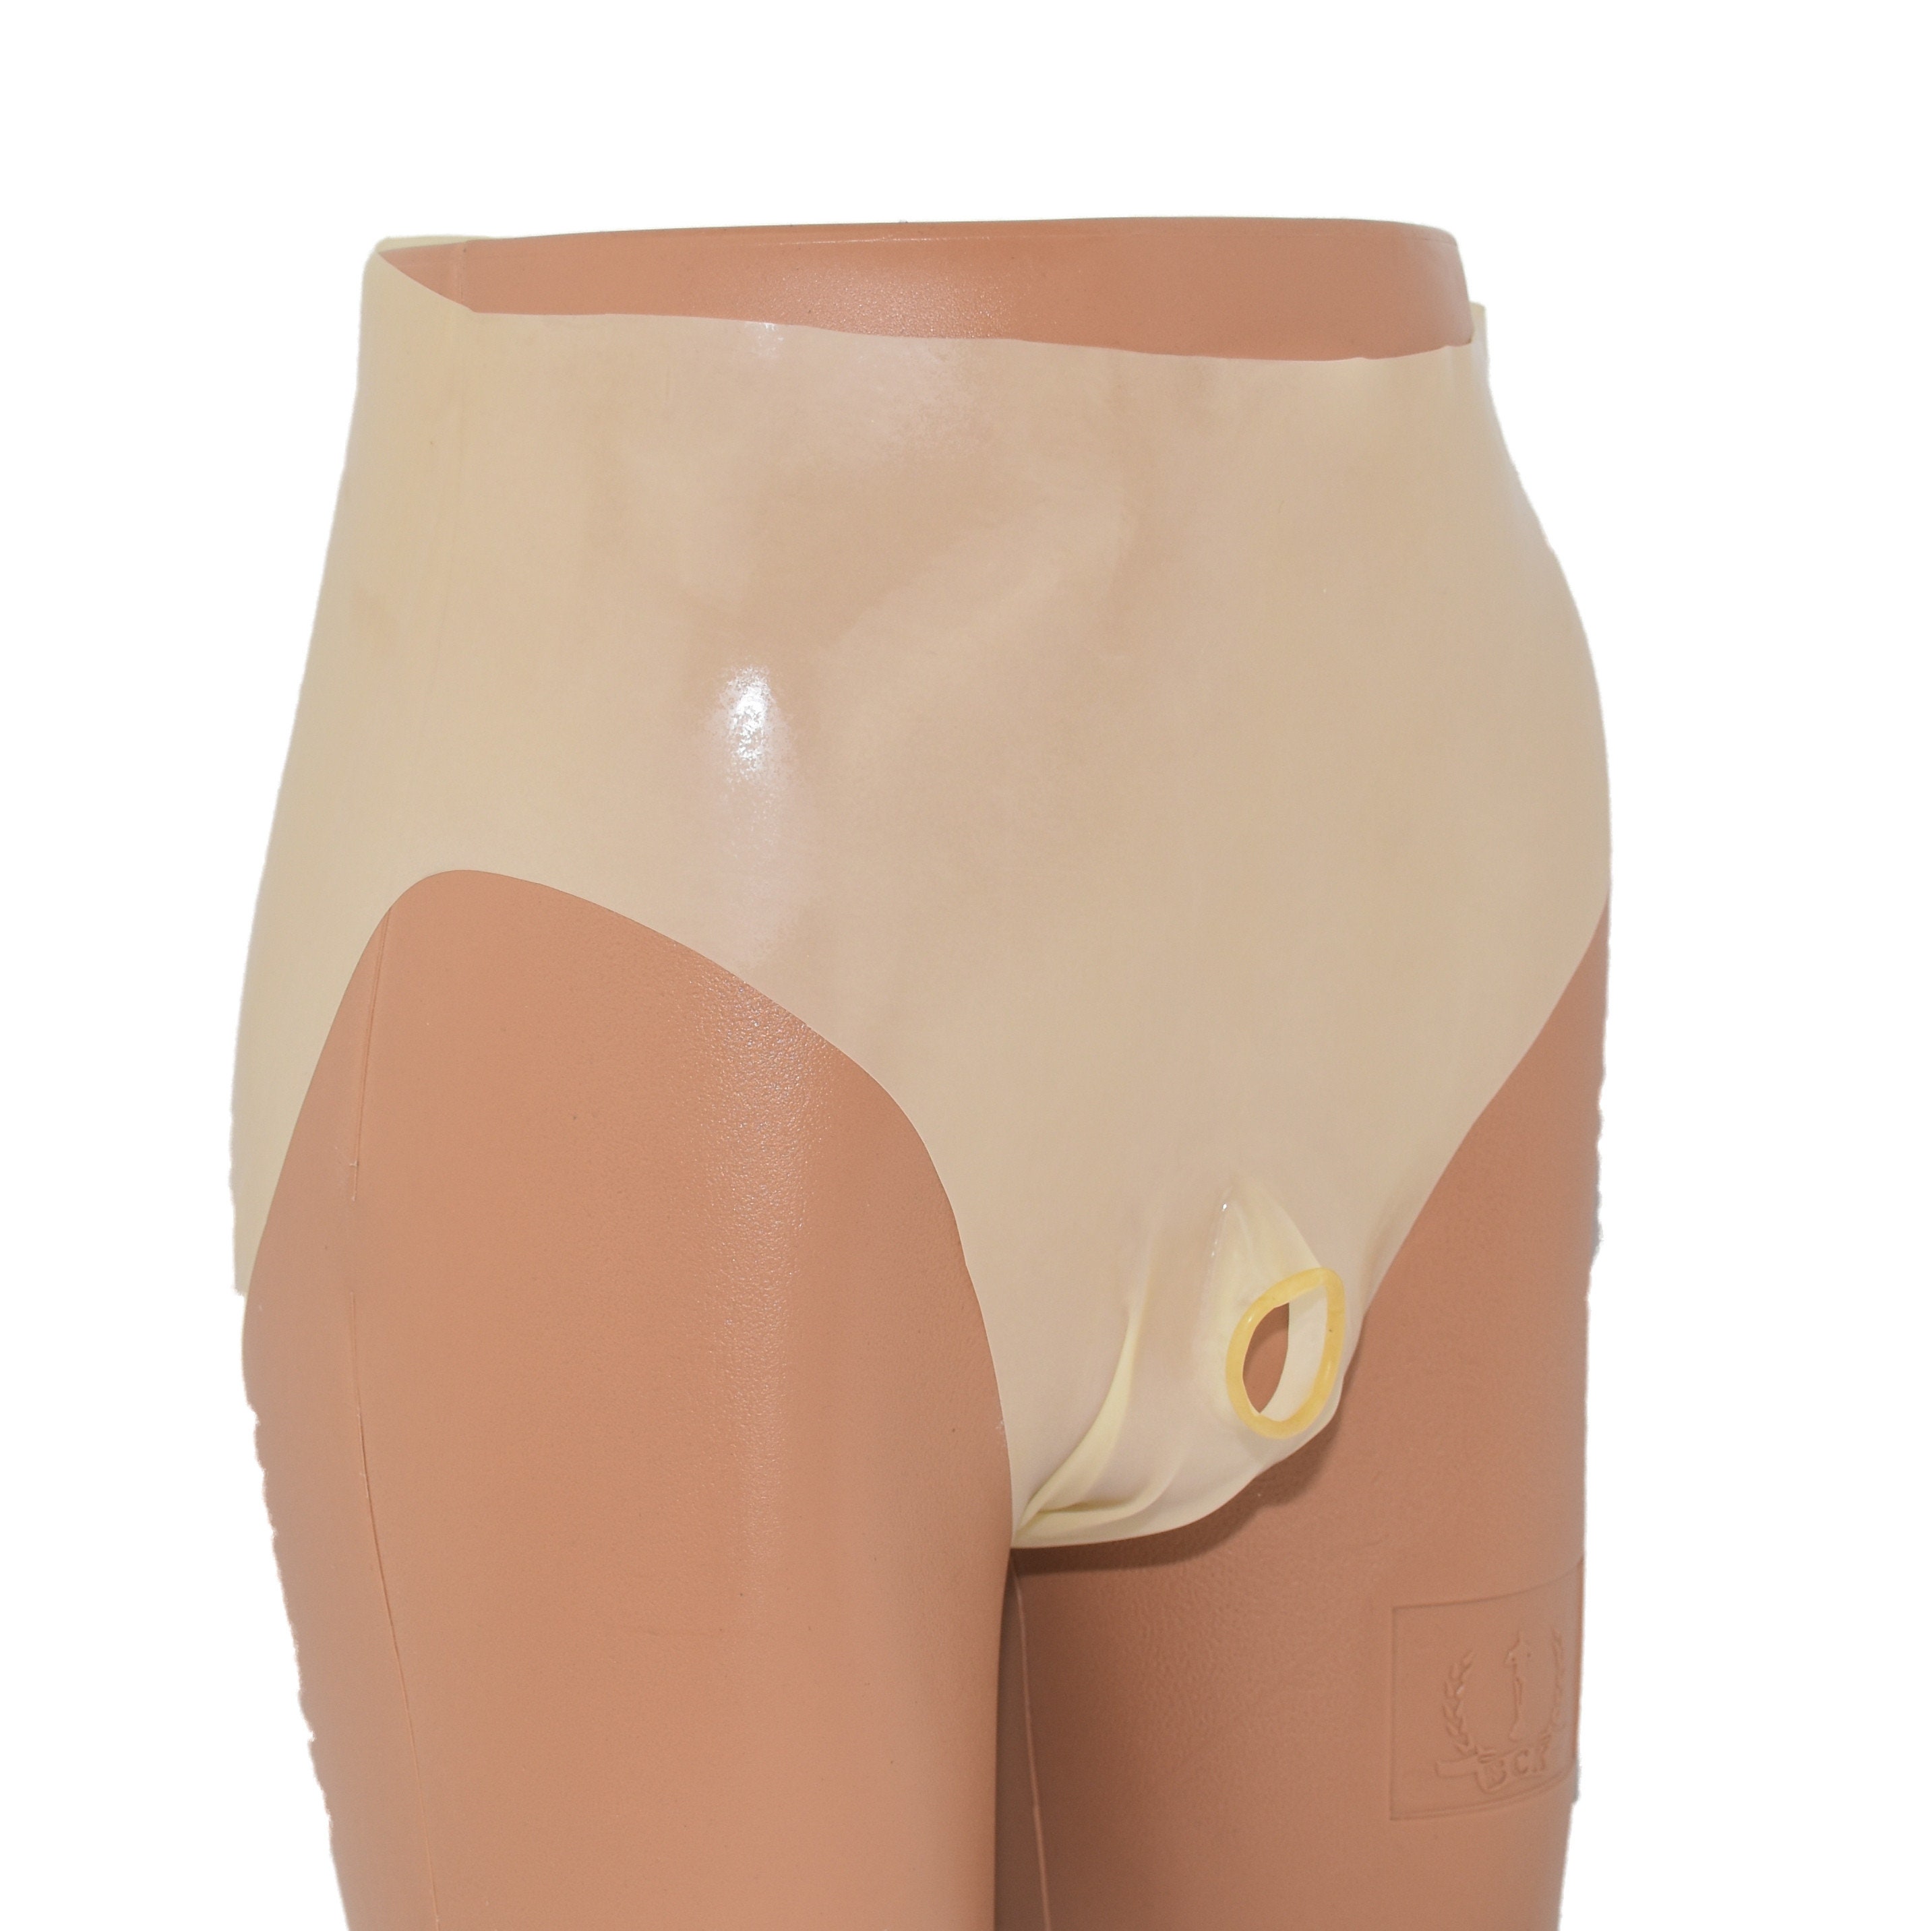 Rubber PVC Adult Baby Euroflex Incontinence Diaper Pants Rubber Pants  Yellow Transparent 